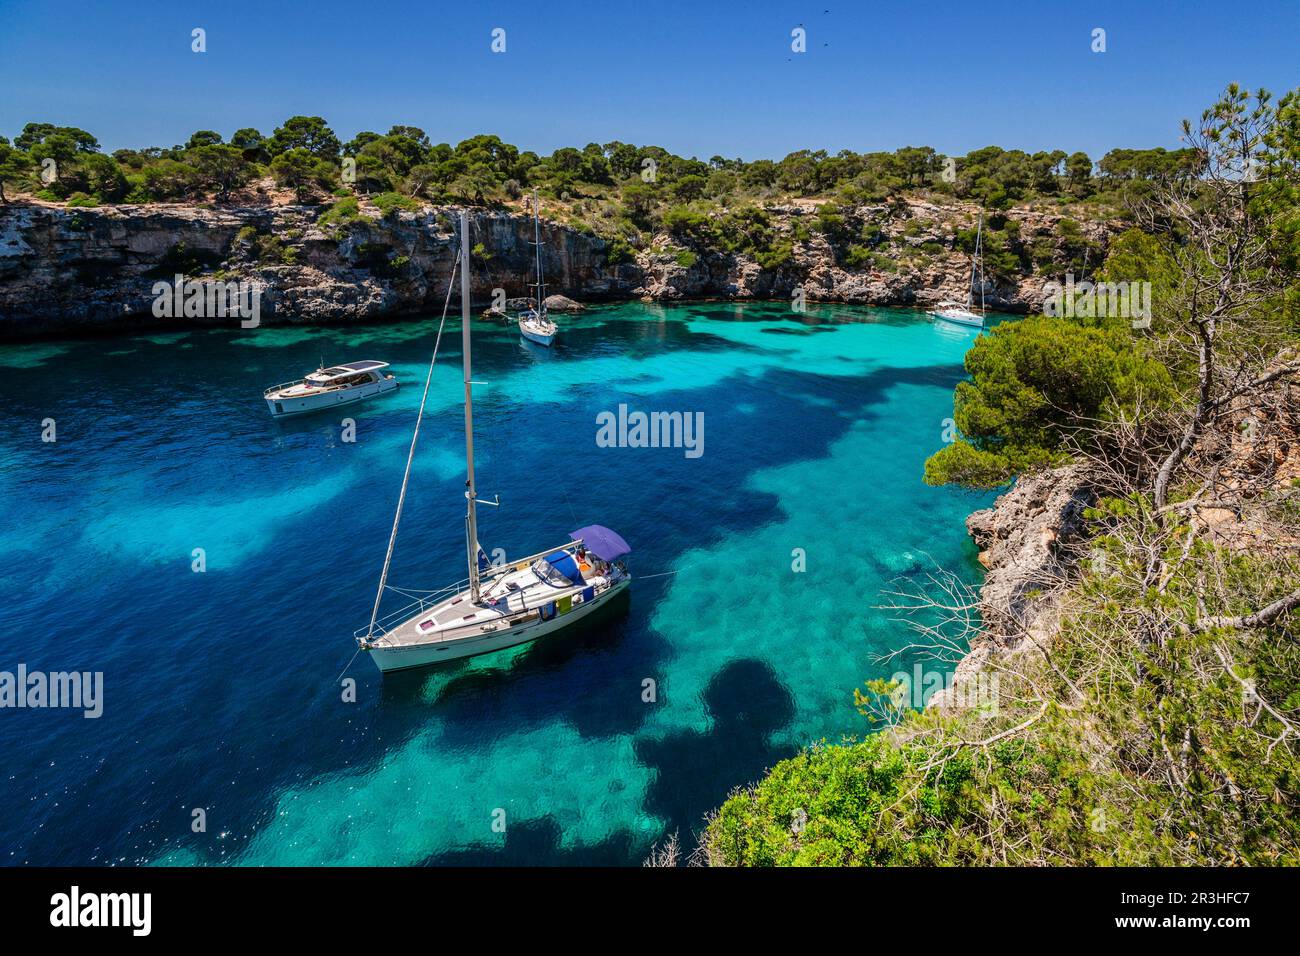 Cala Pi, Llucmajor,comarca de Migjorn. Mallorca. Islas Baleares. Spain. Stock Photo